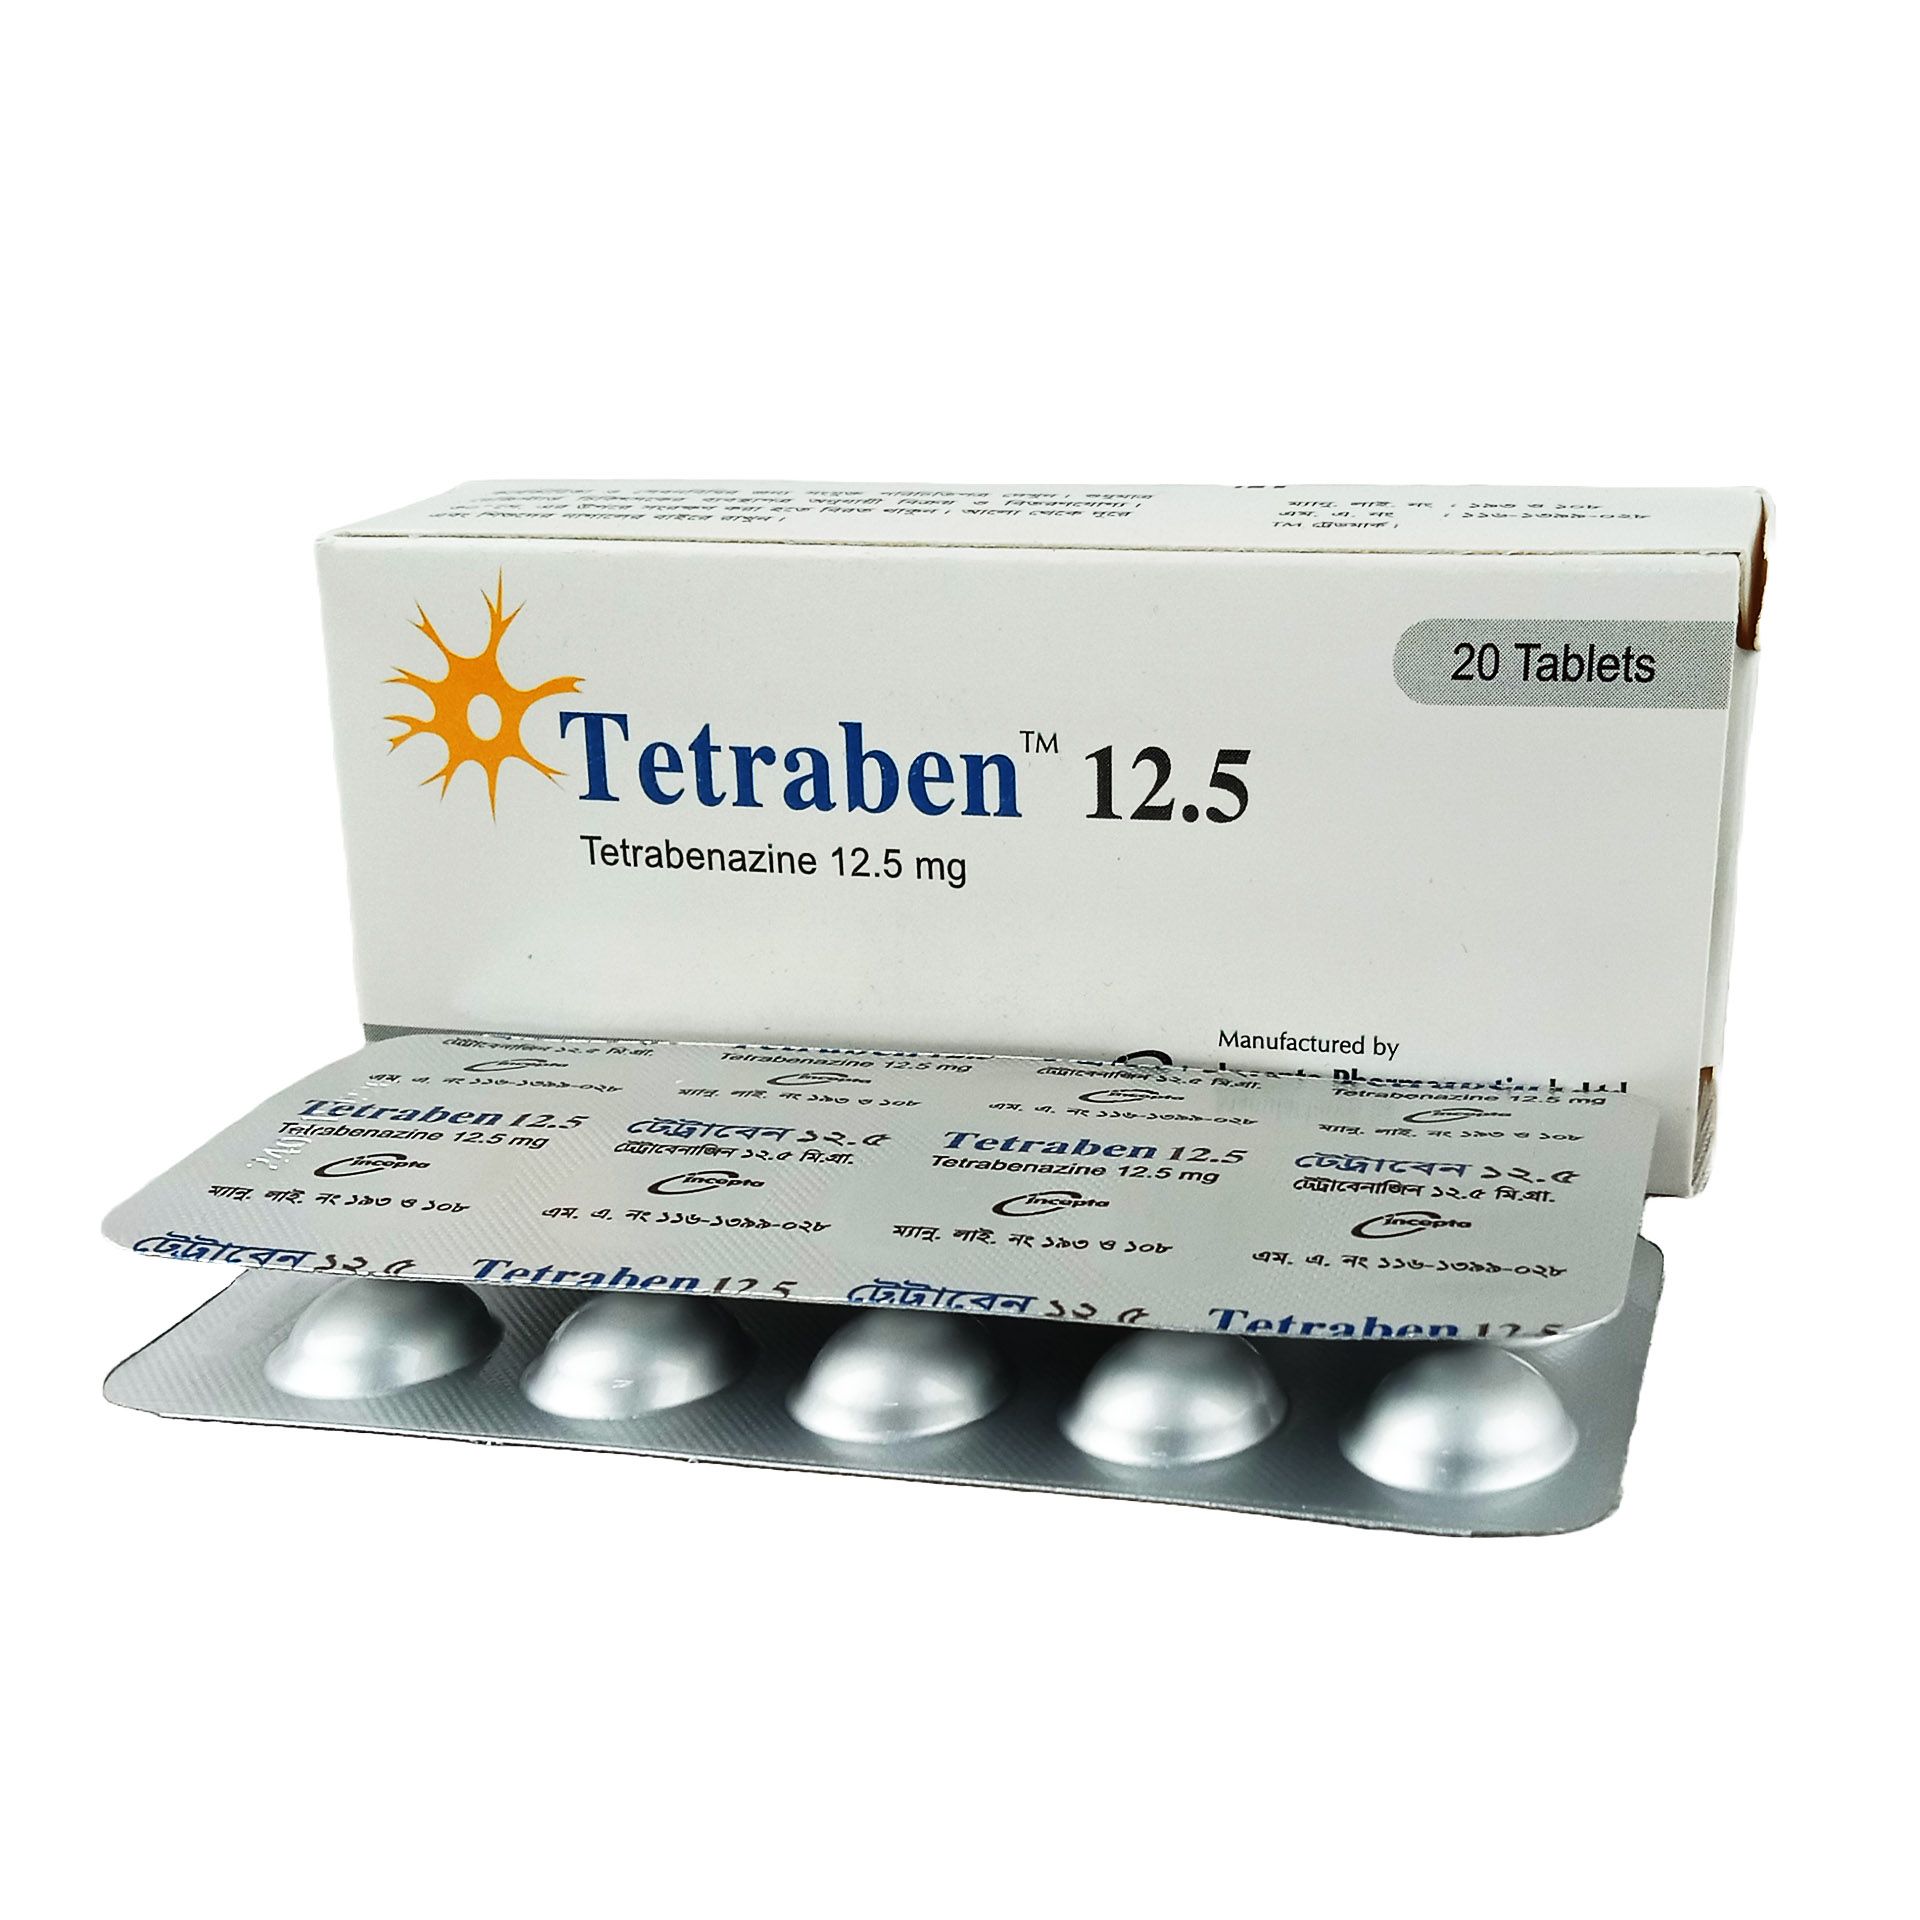 Tetraben 12.5 12.5mg Tablet